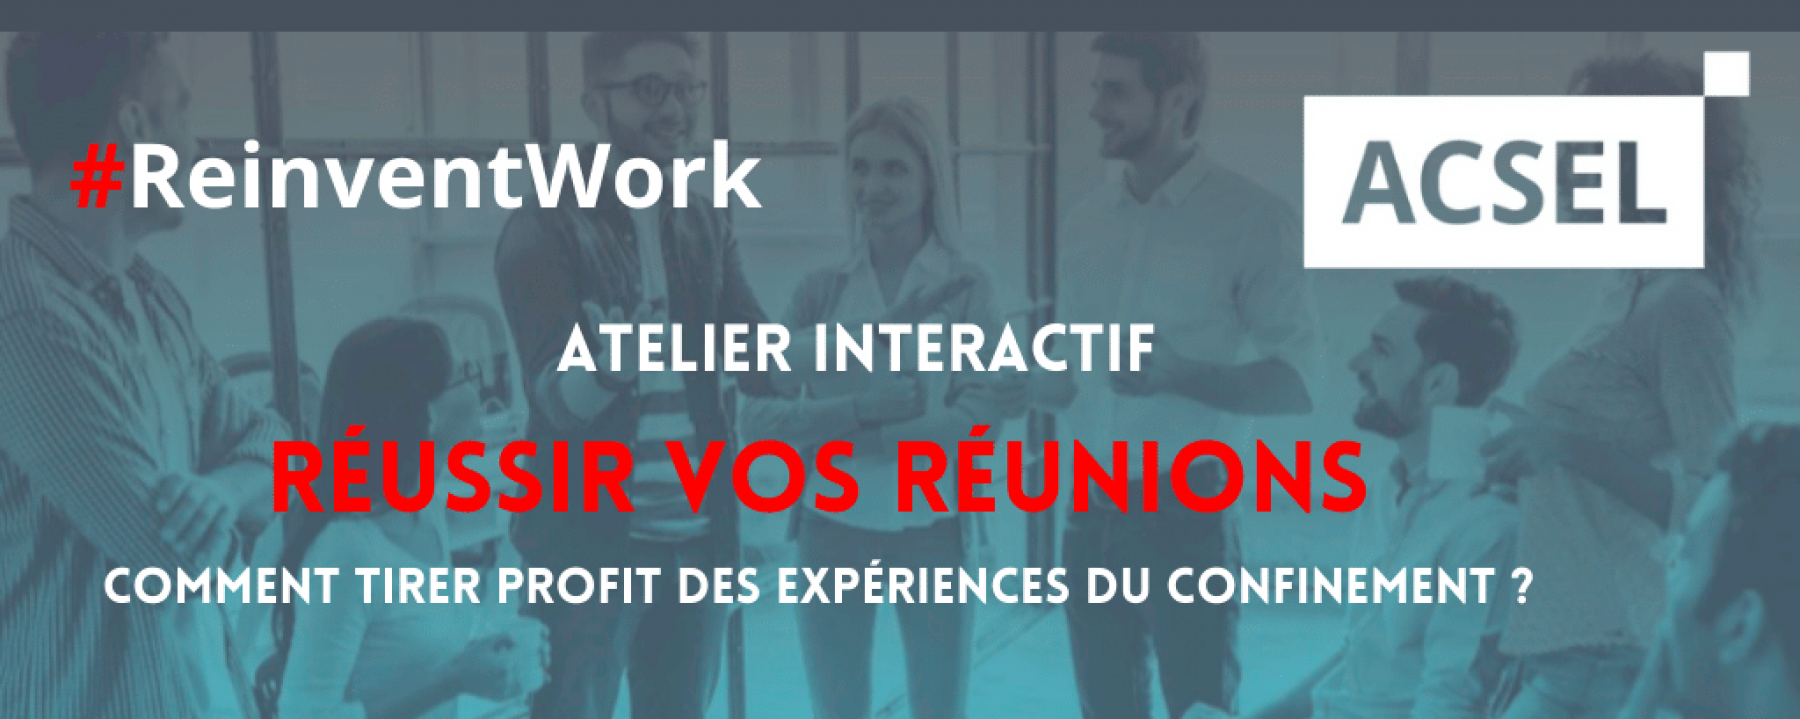 Webinar #Reinventwork : réussir vos réunions, le 14 mai 2020, organisé par l'ACSEL